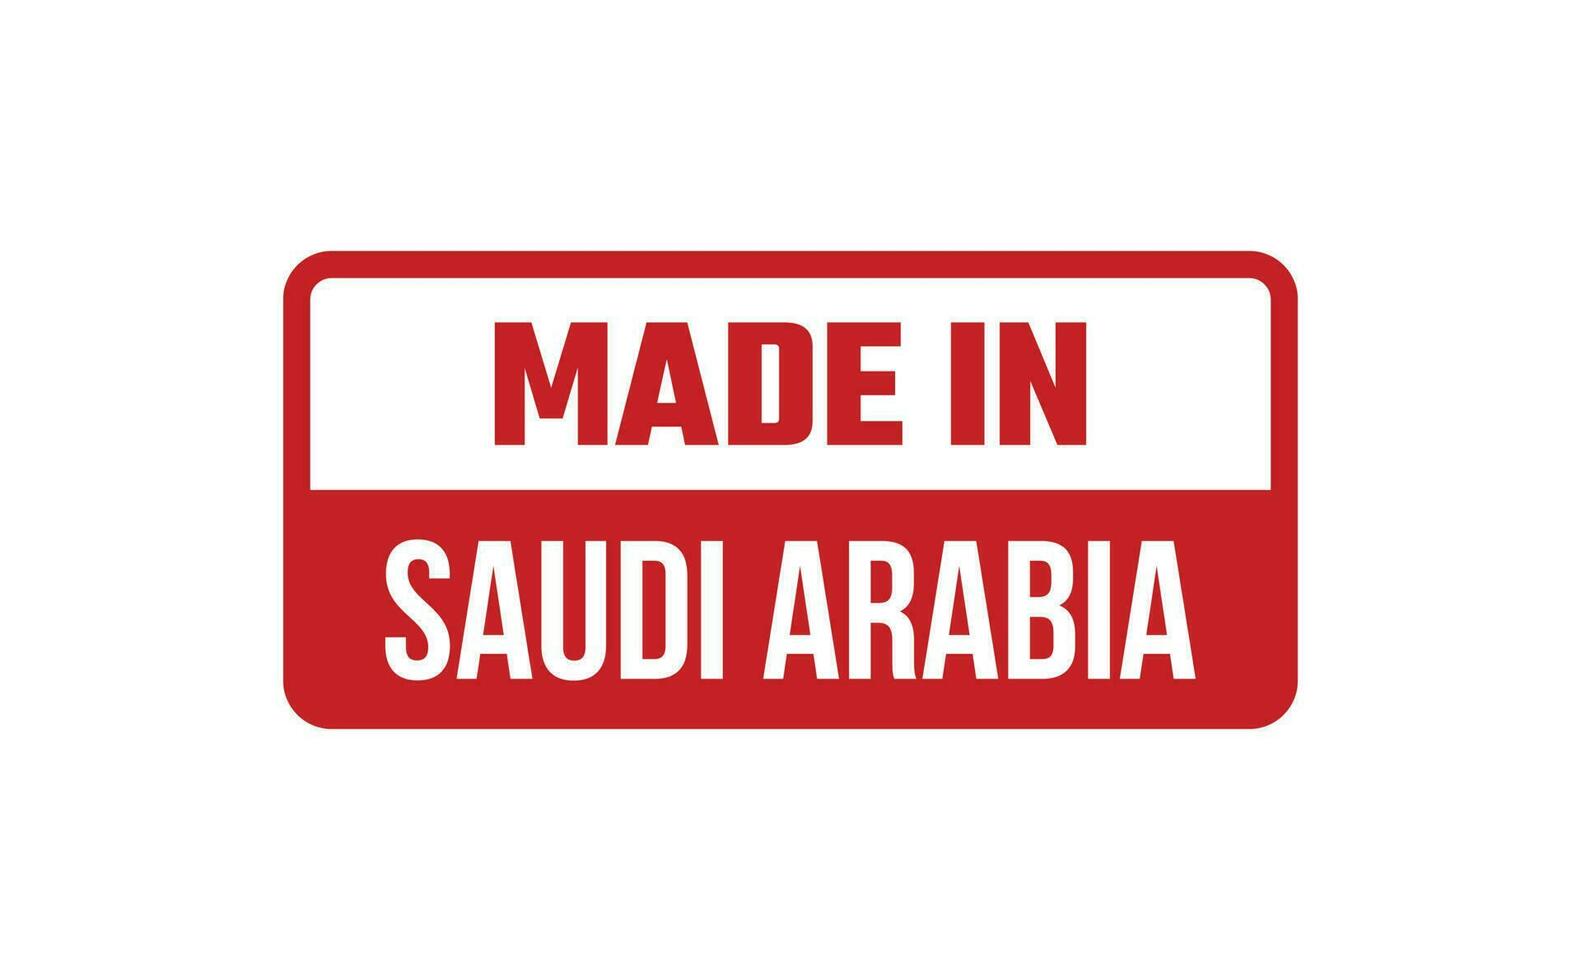 fabriqué dans saoudien Saoudite caoutchouc timbre vecteur